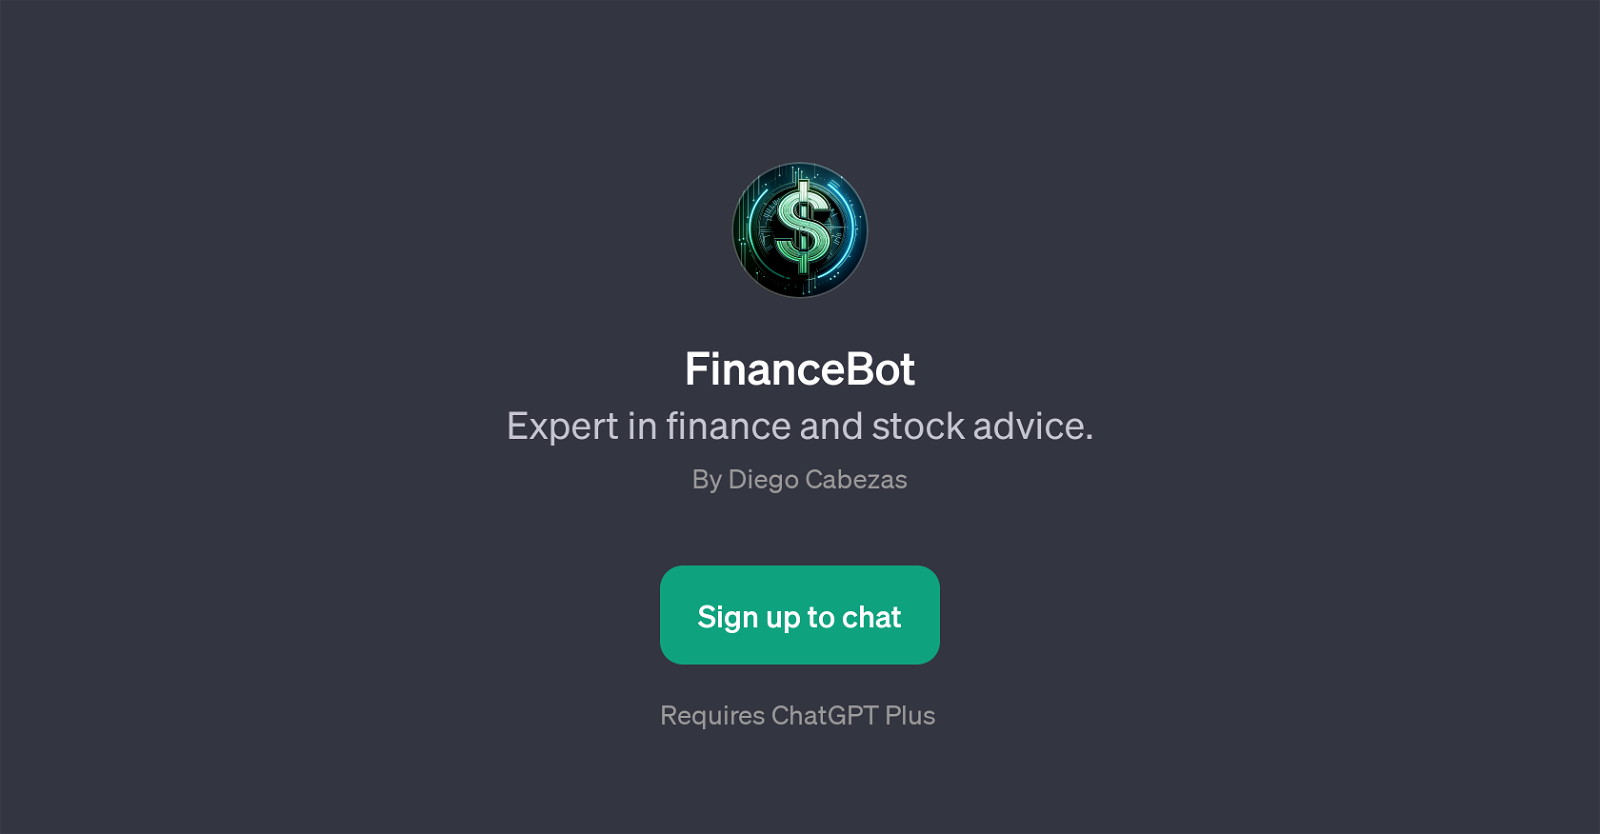 FinanceBot website